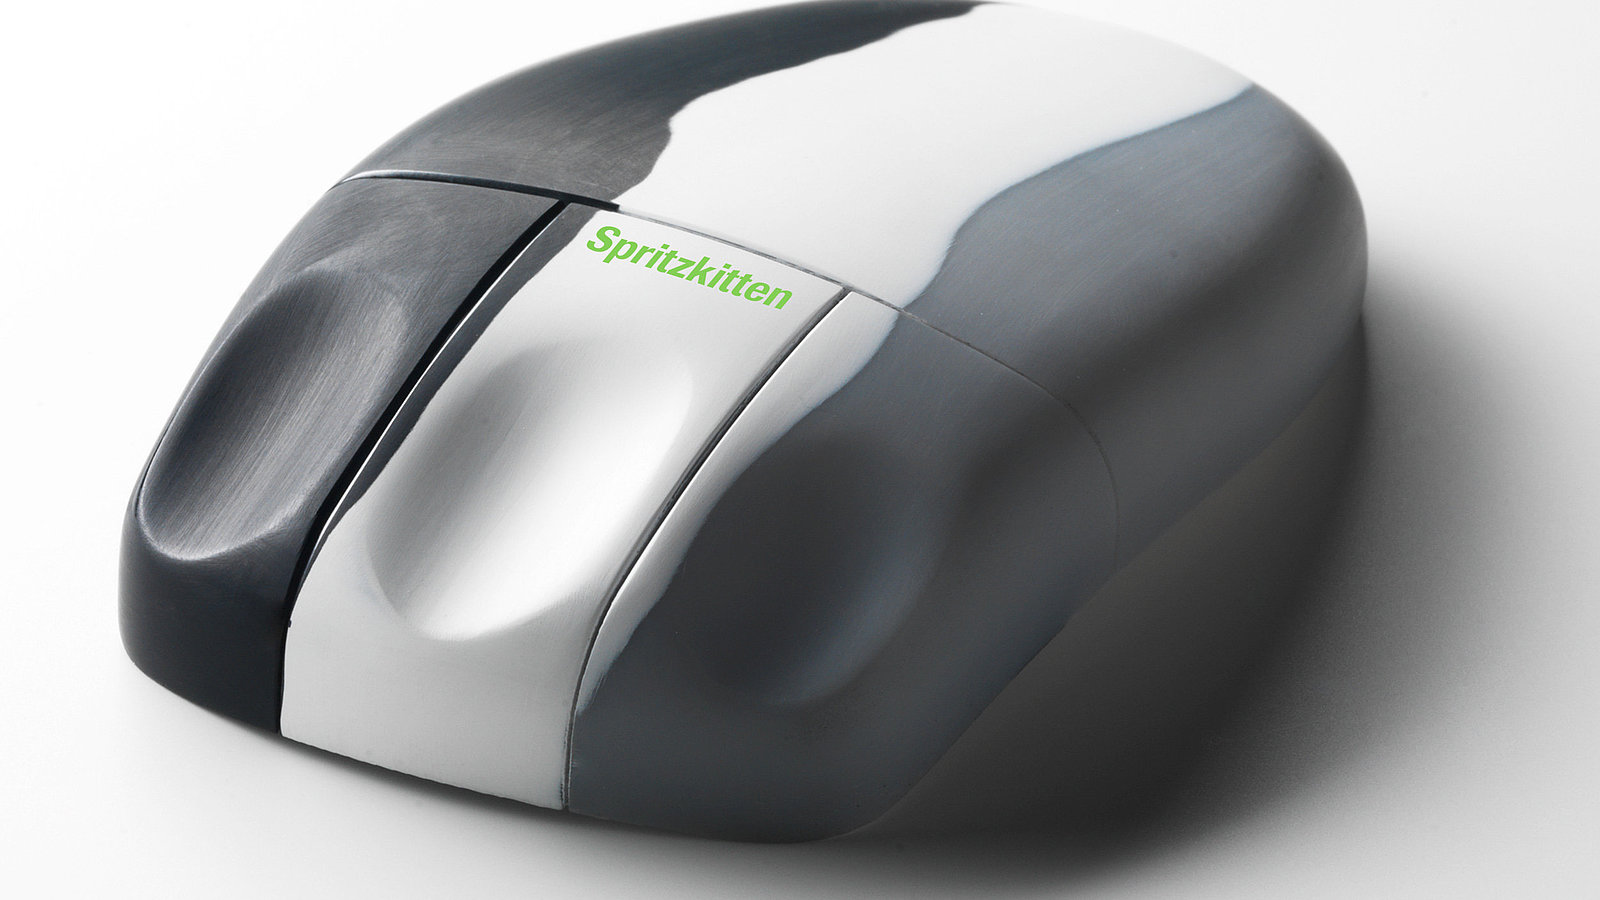 Das Bild zeigt eine schwarz/weiß/grau Maus mit grüner Aufschrift "Spritzkitten". Spritzkitten ist eine Art von Oberflächentechnik welche Kunststoffteile an Ihre Perfektion bringt.